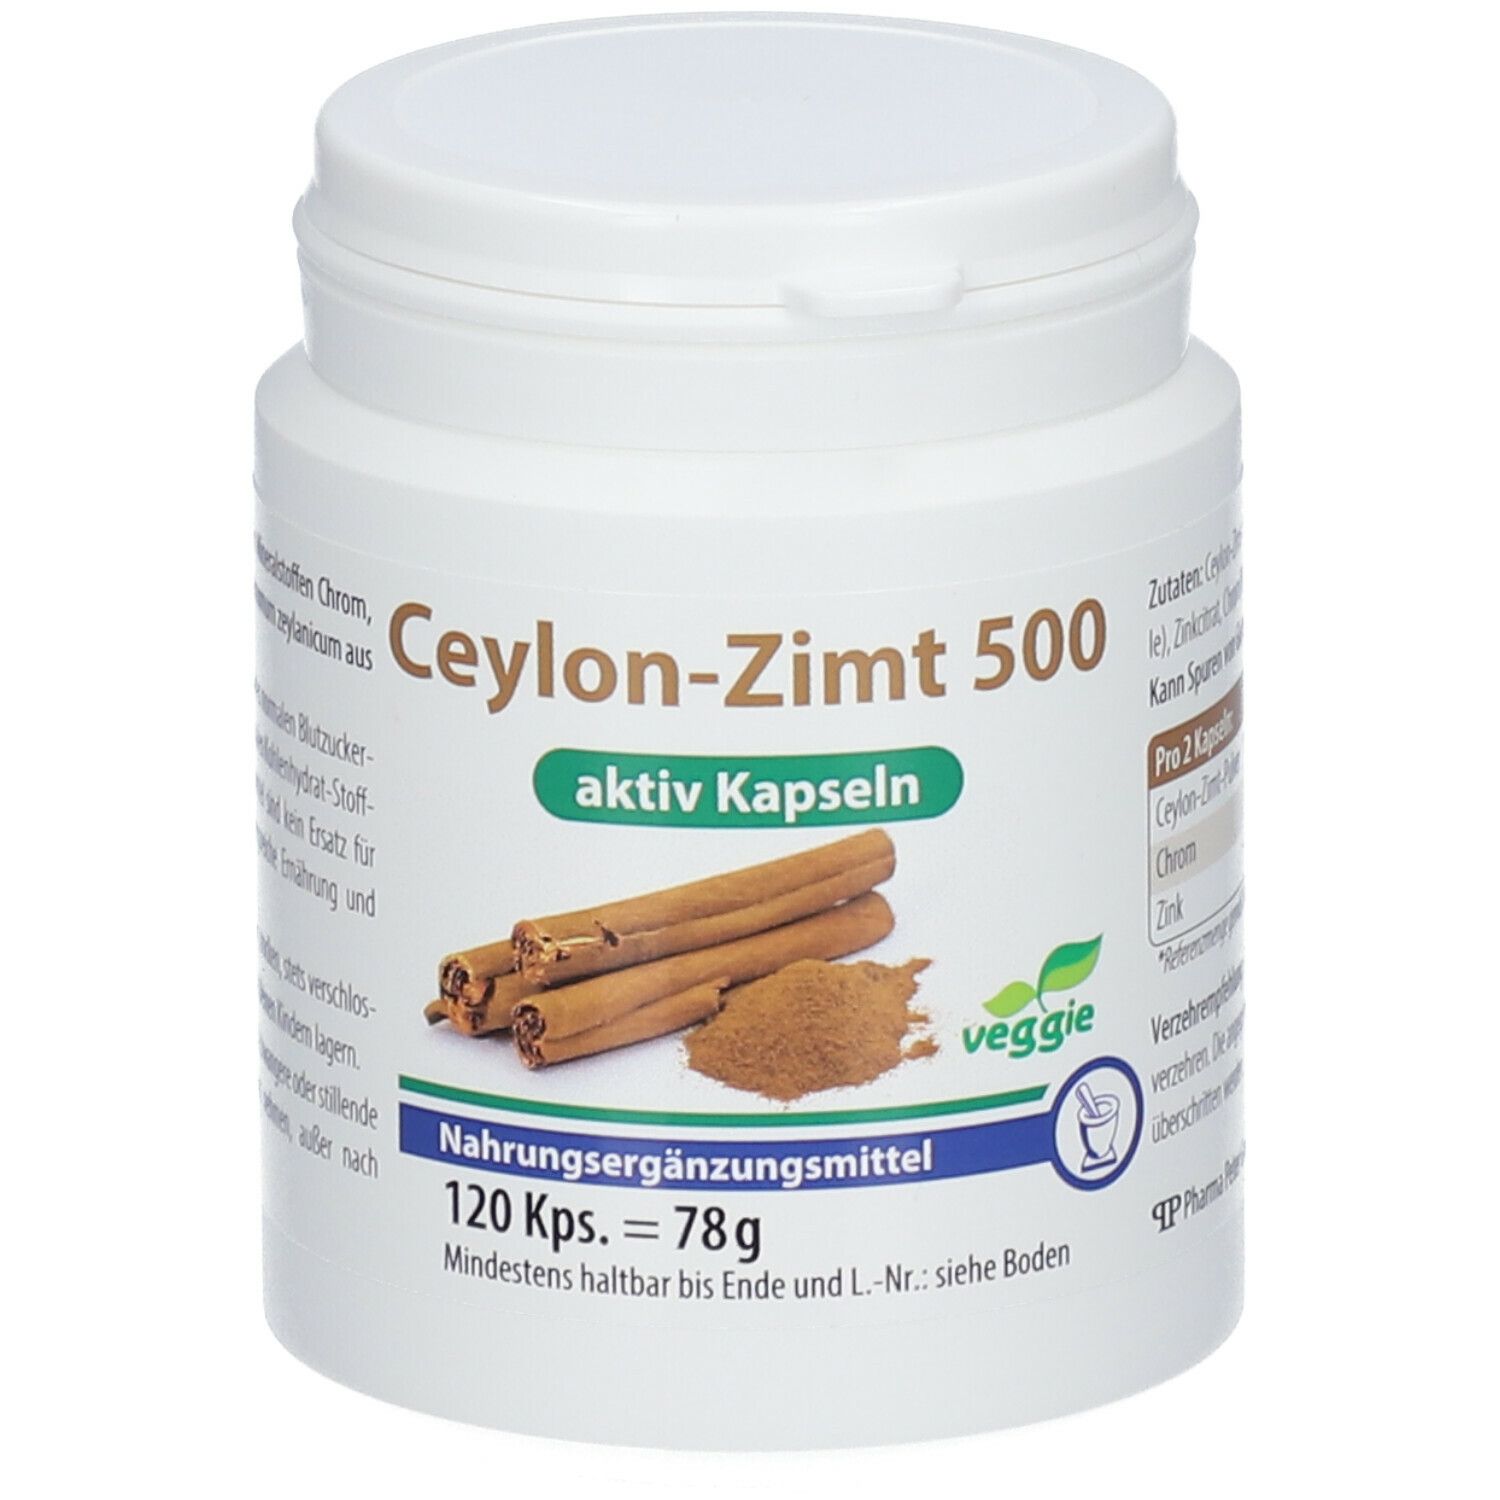 Image of Ceylon-Zimt 500 aktiv